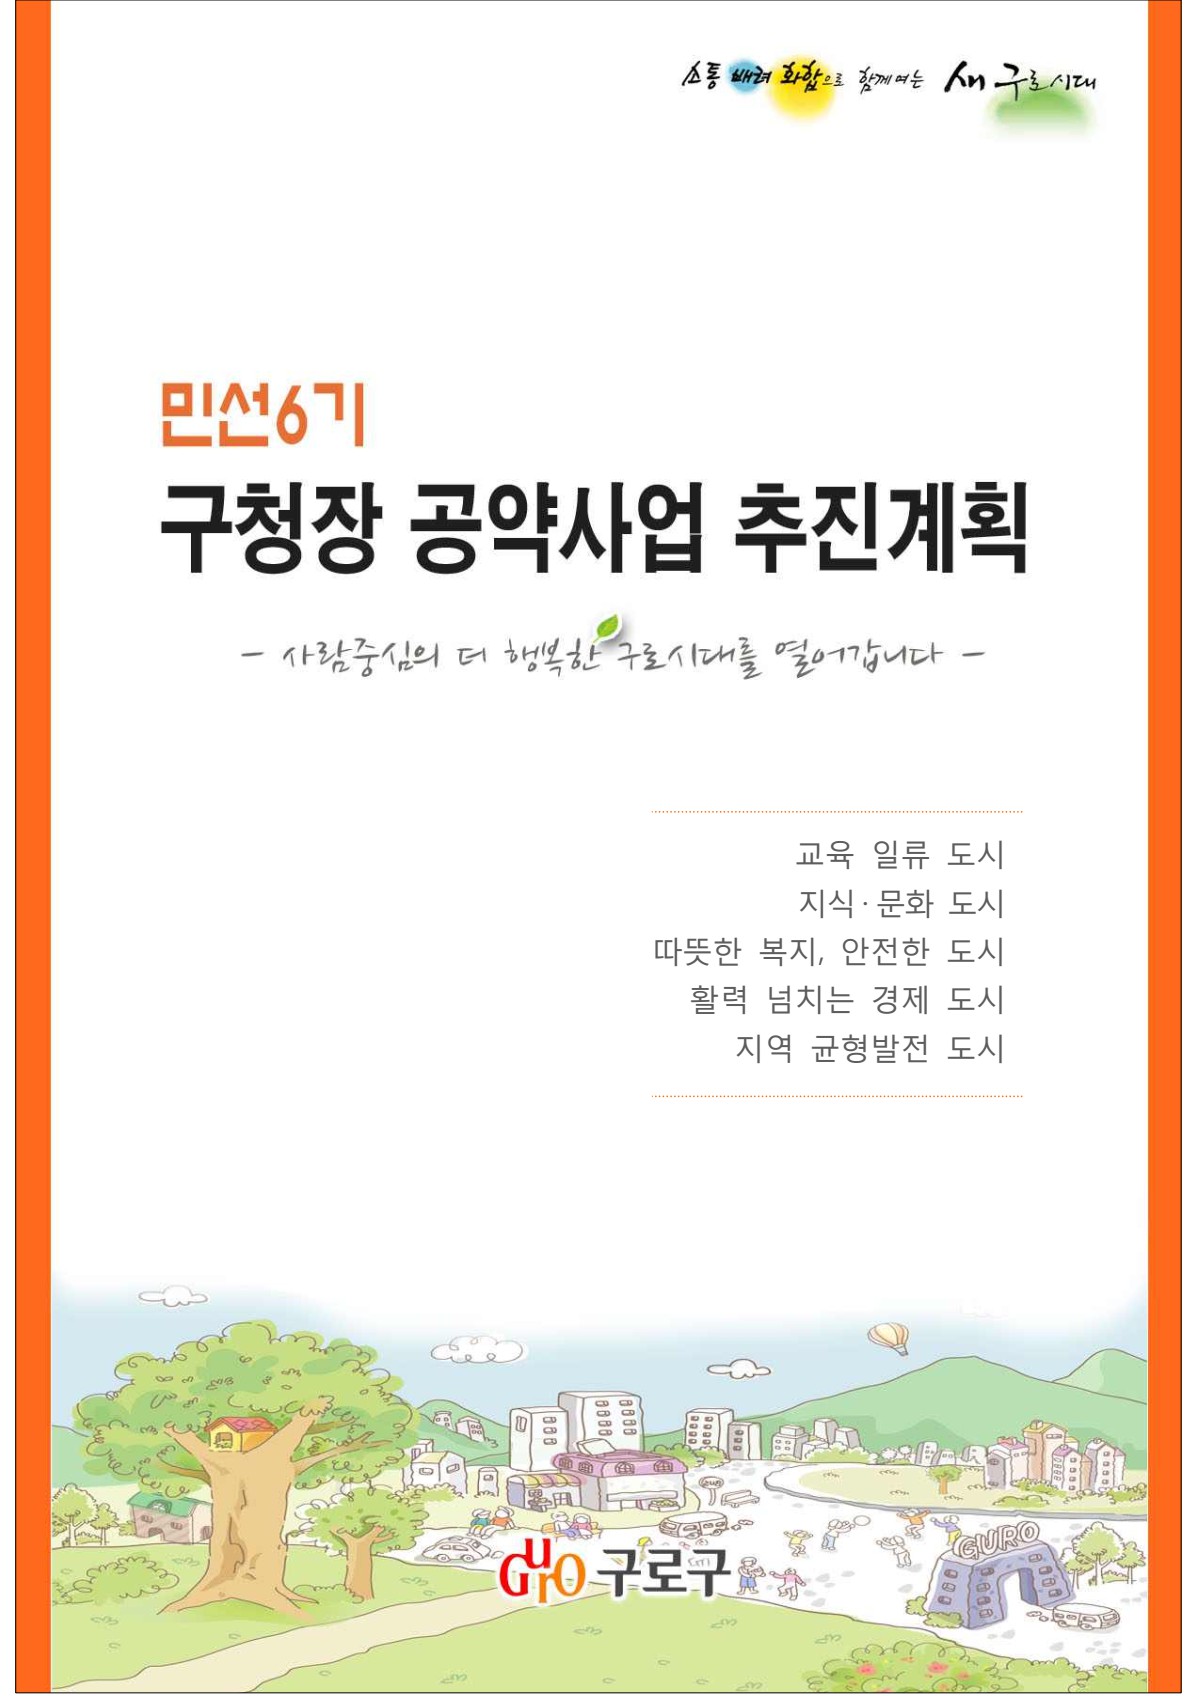 민선6기 구청장 공약사업 추진계획 표지